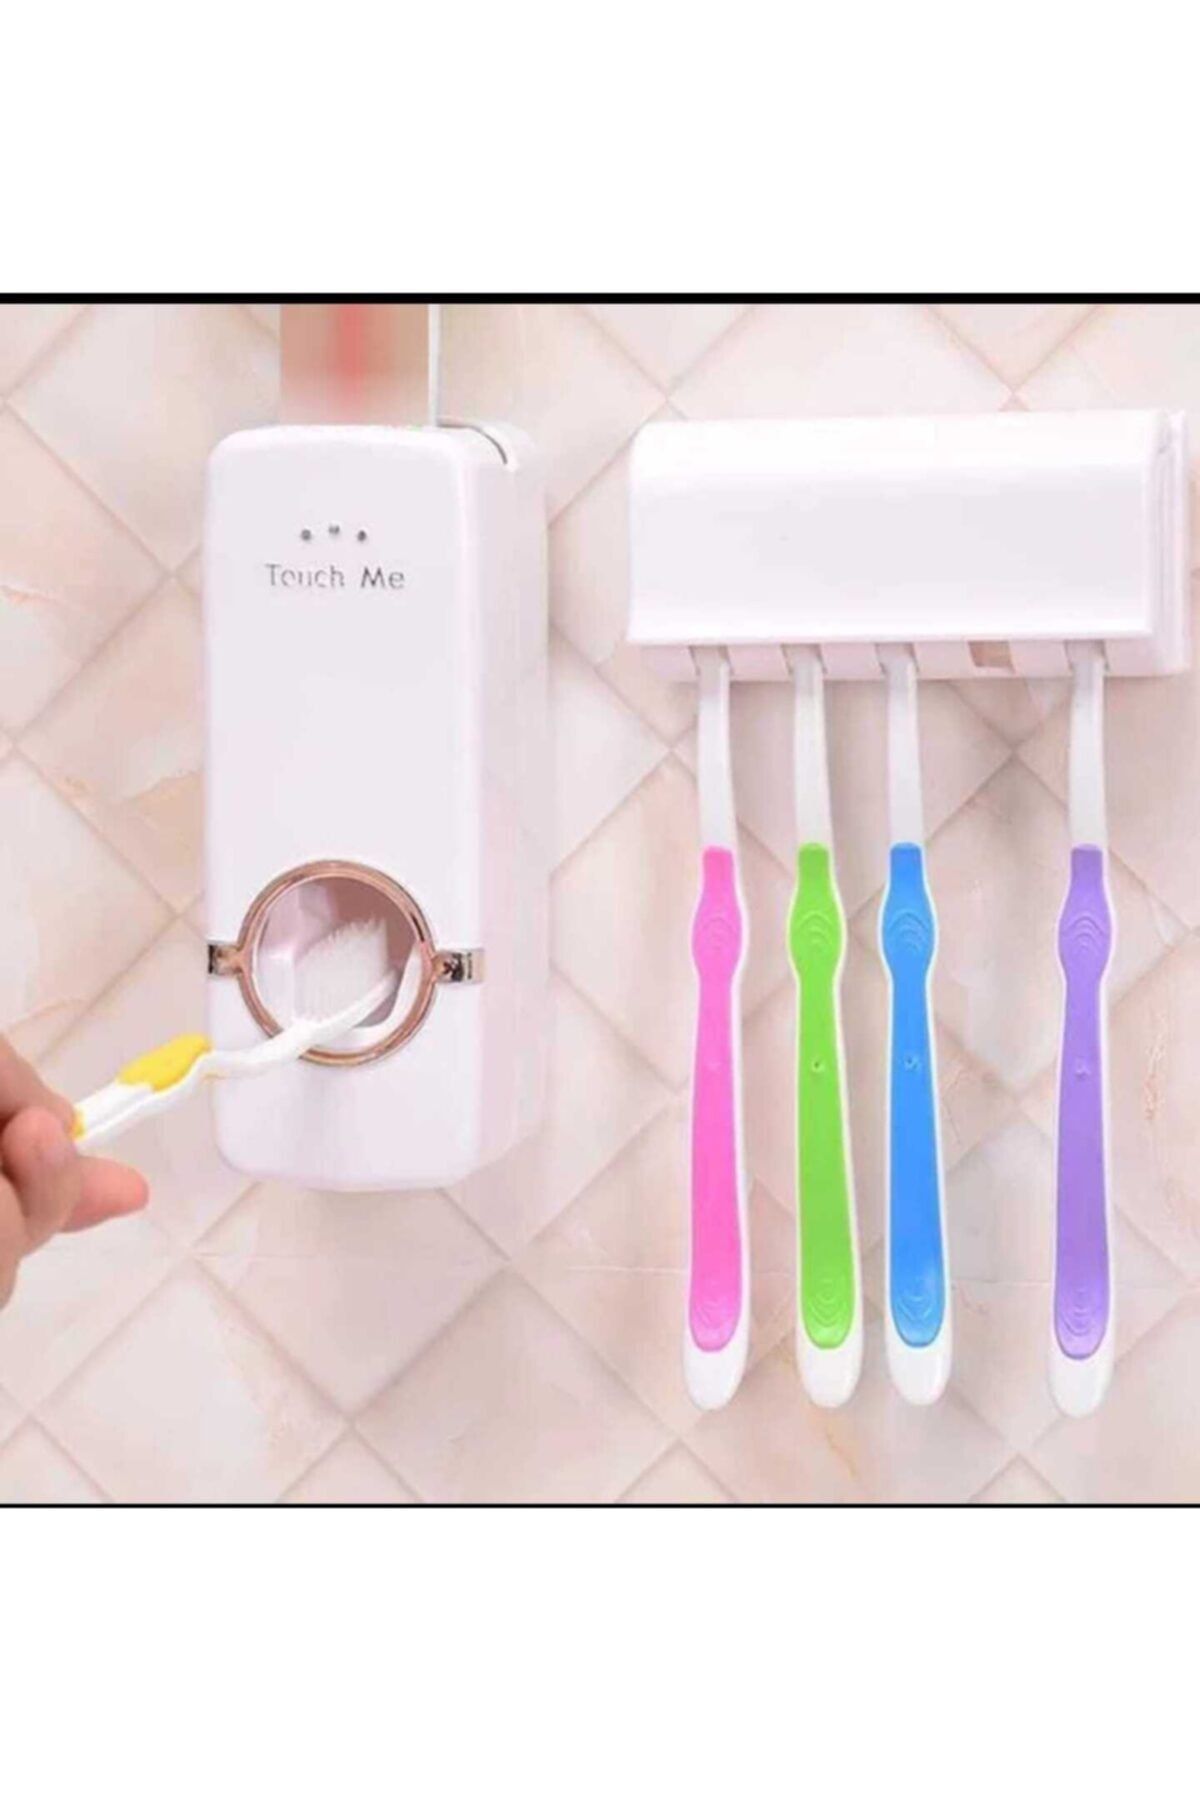 KARAKUŞ Banyo Aksesuarları Seti Diş Fırçası Tutucu Otomatik Diş Macunu Dispenser Tutucu